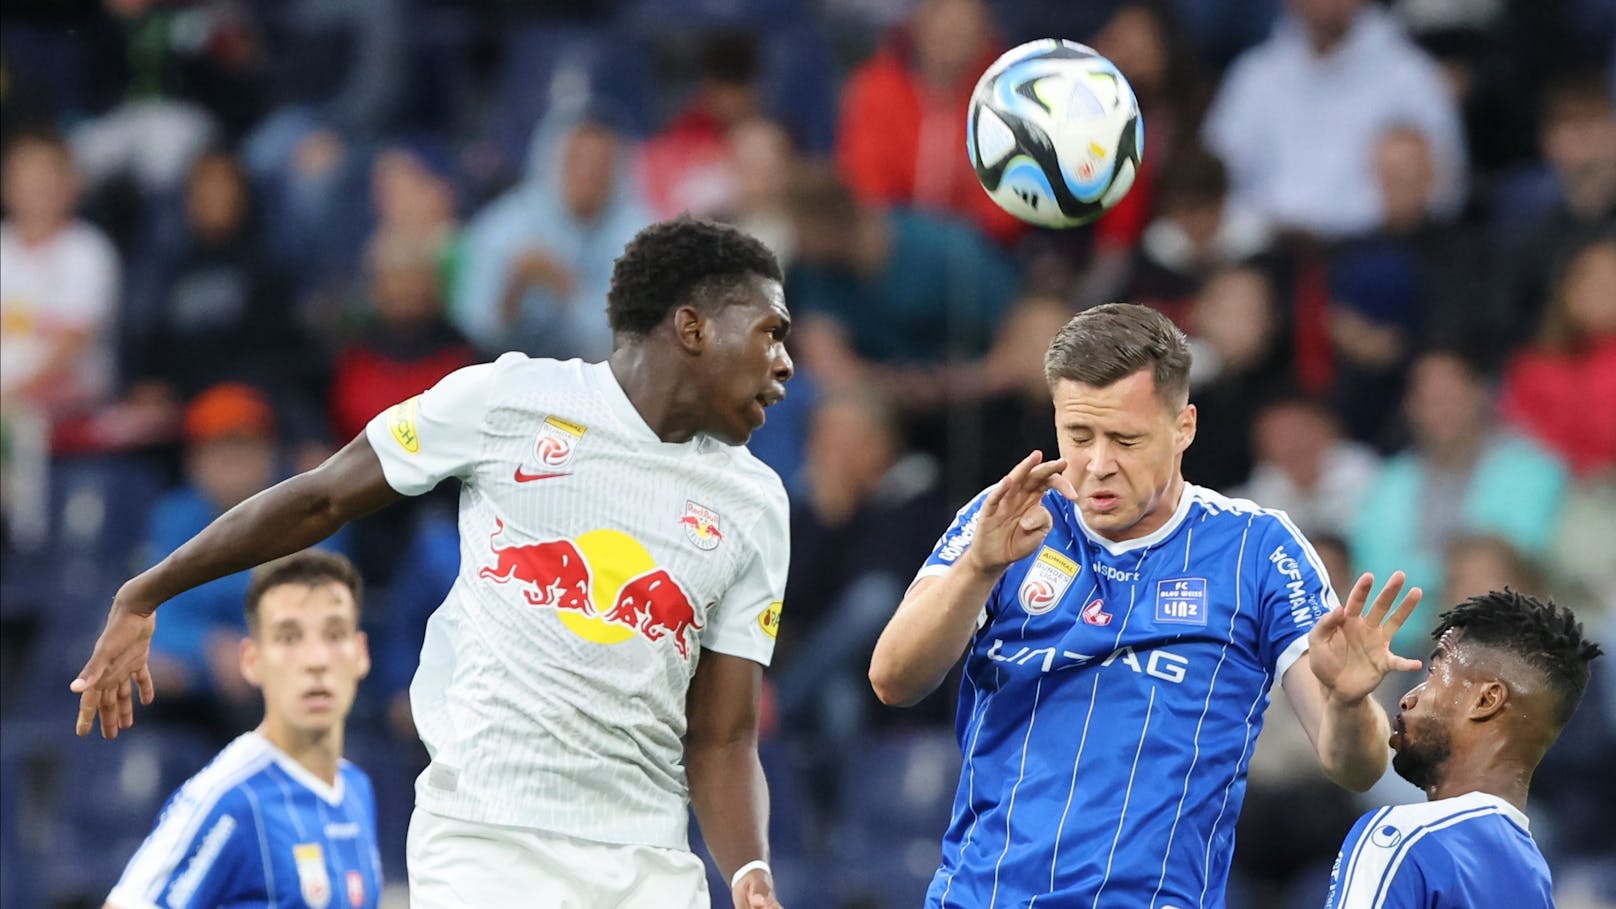 In Runde acht gewann Blau-Weiß Linz sensationell auswärts mit 1:0 gegen Salzburg. Für die "Bullen" war es die erste Heimpleite nach 45 Partien.